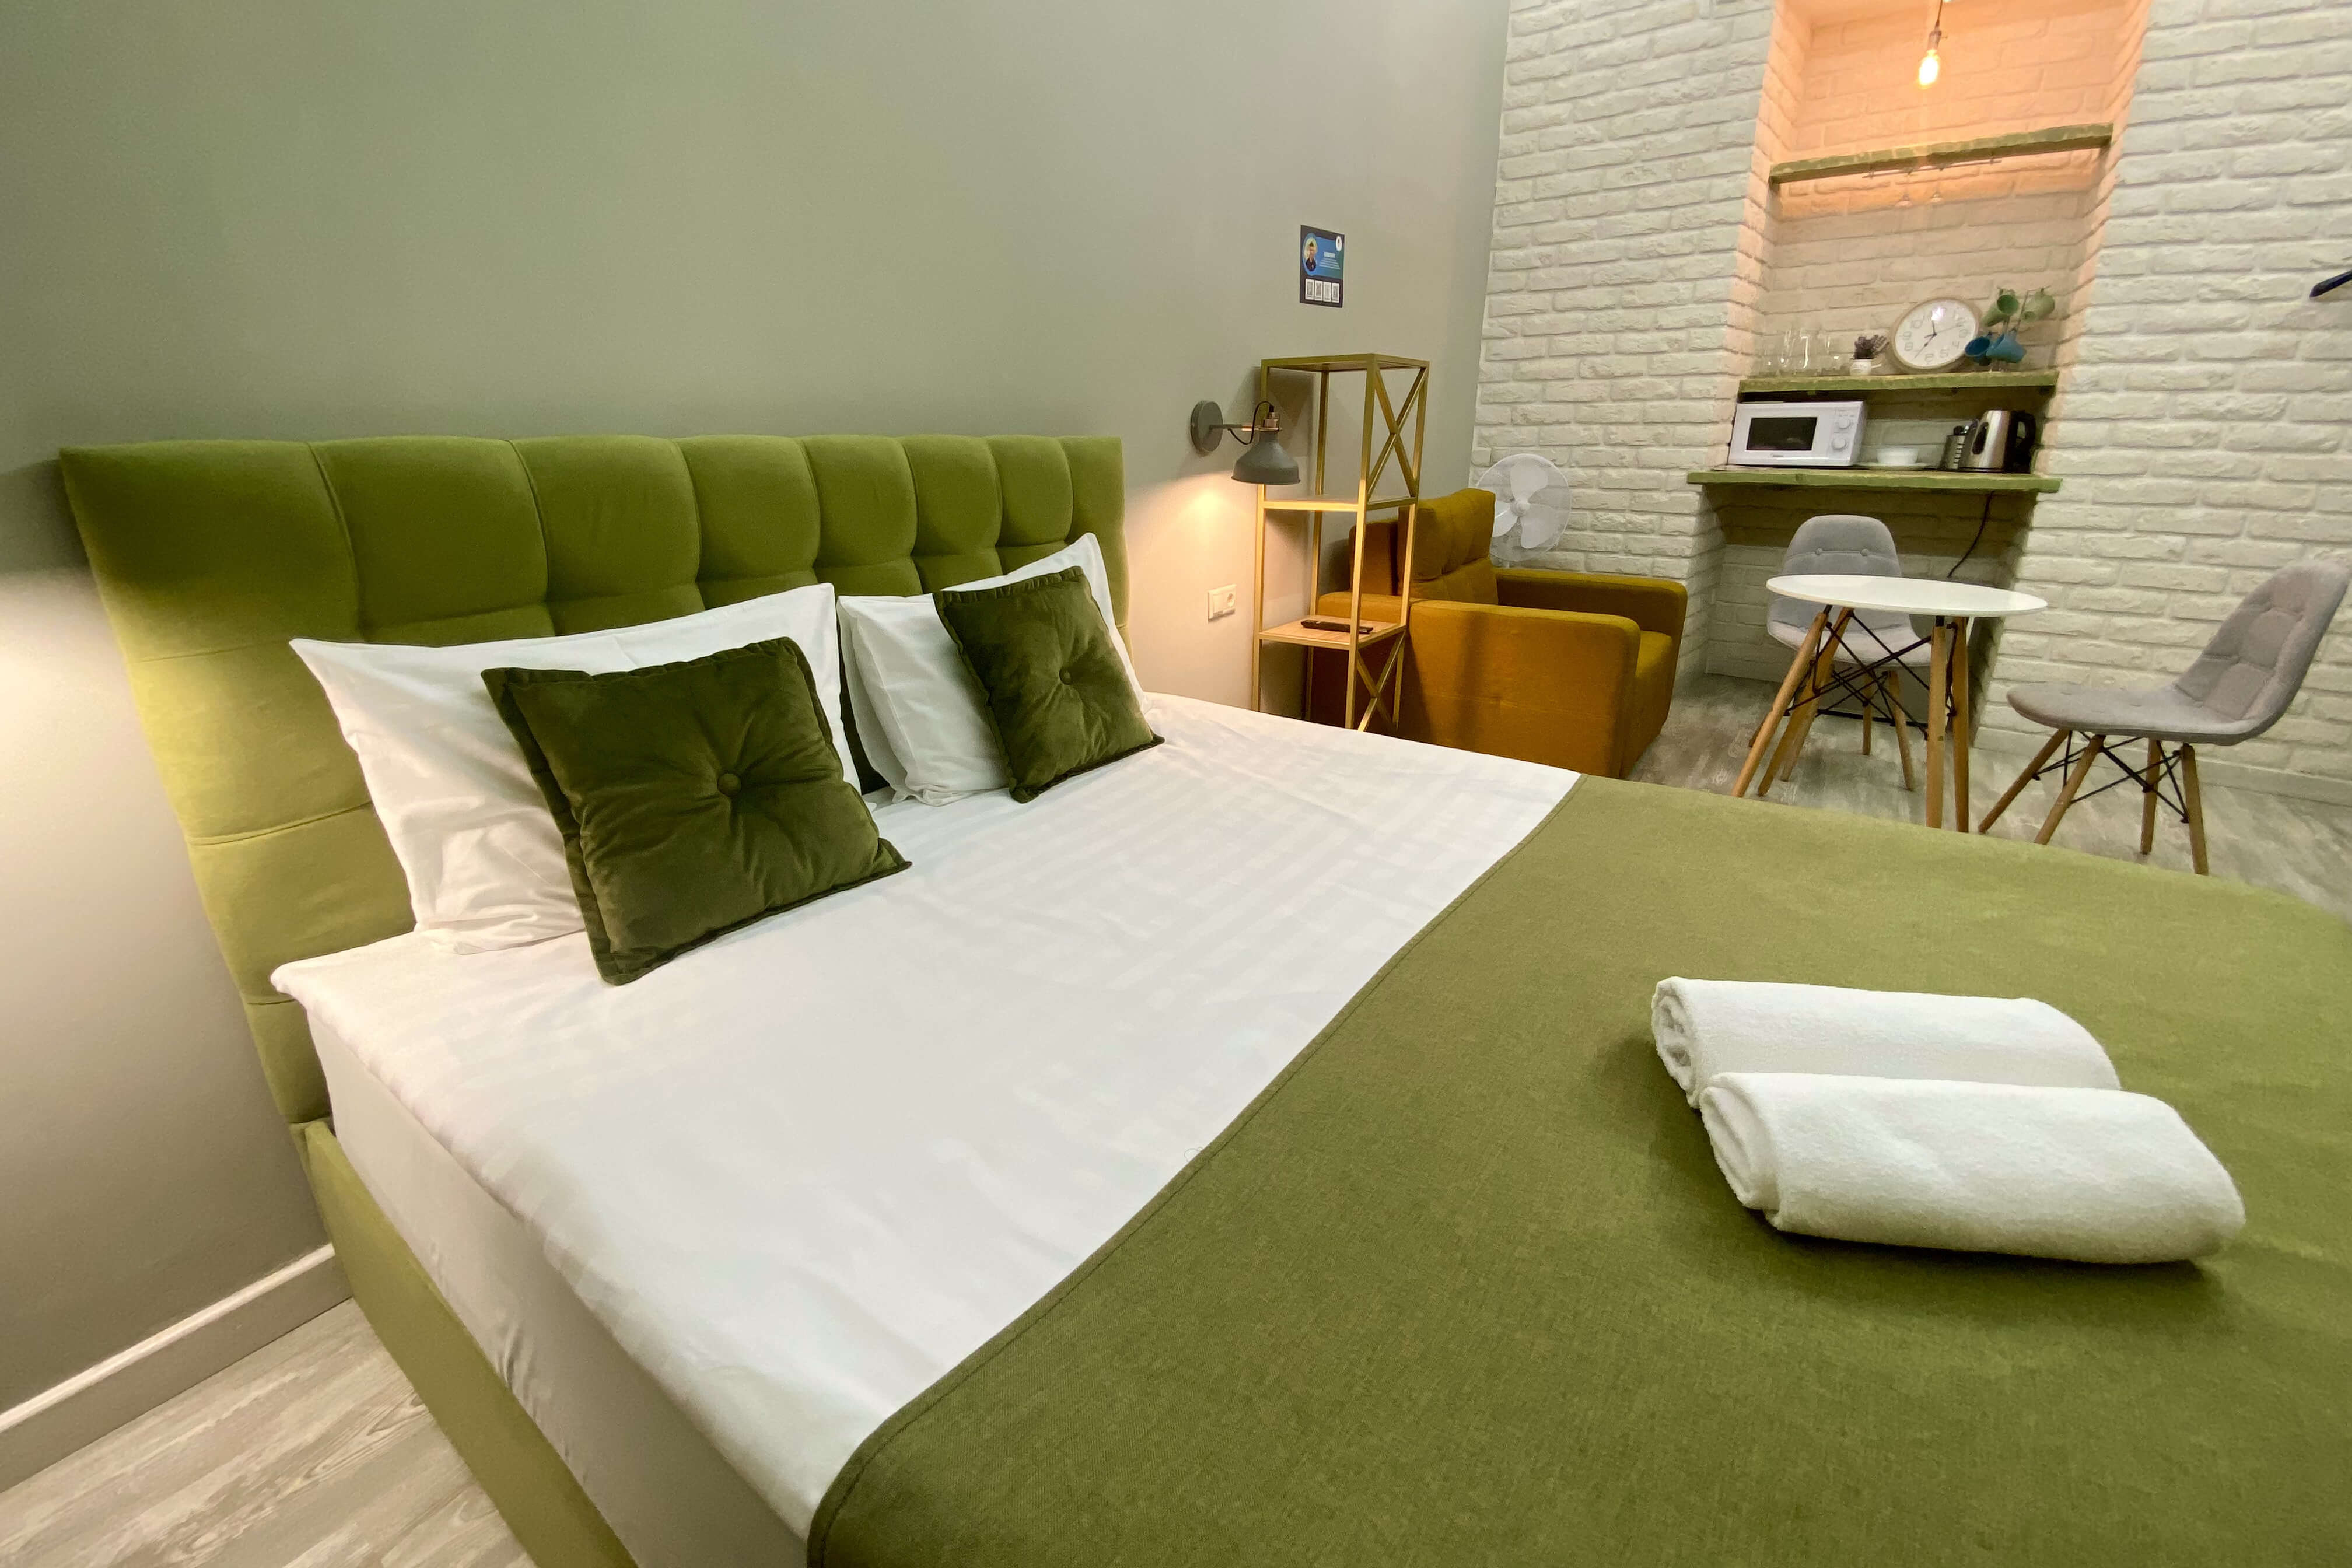 Основание кровати, подушки и саше - болотного, зеленого цвета.